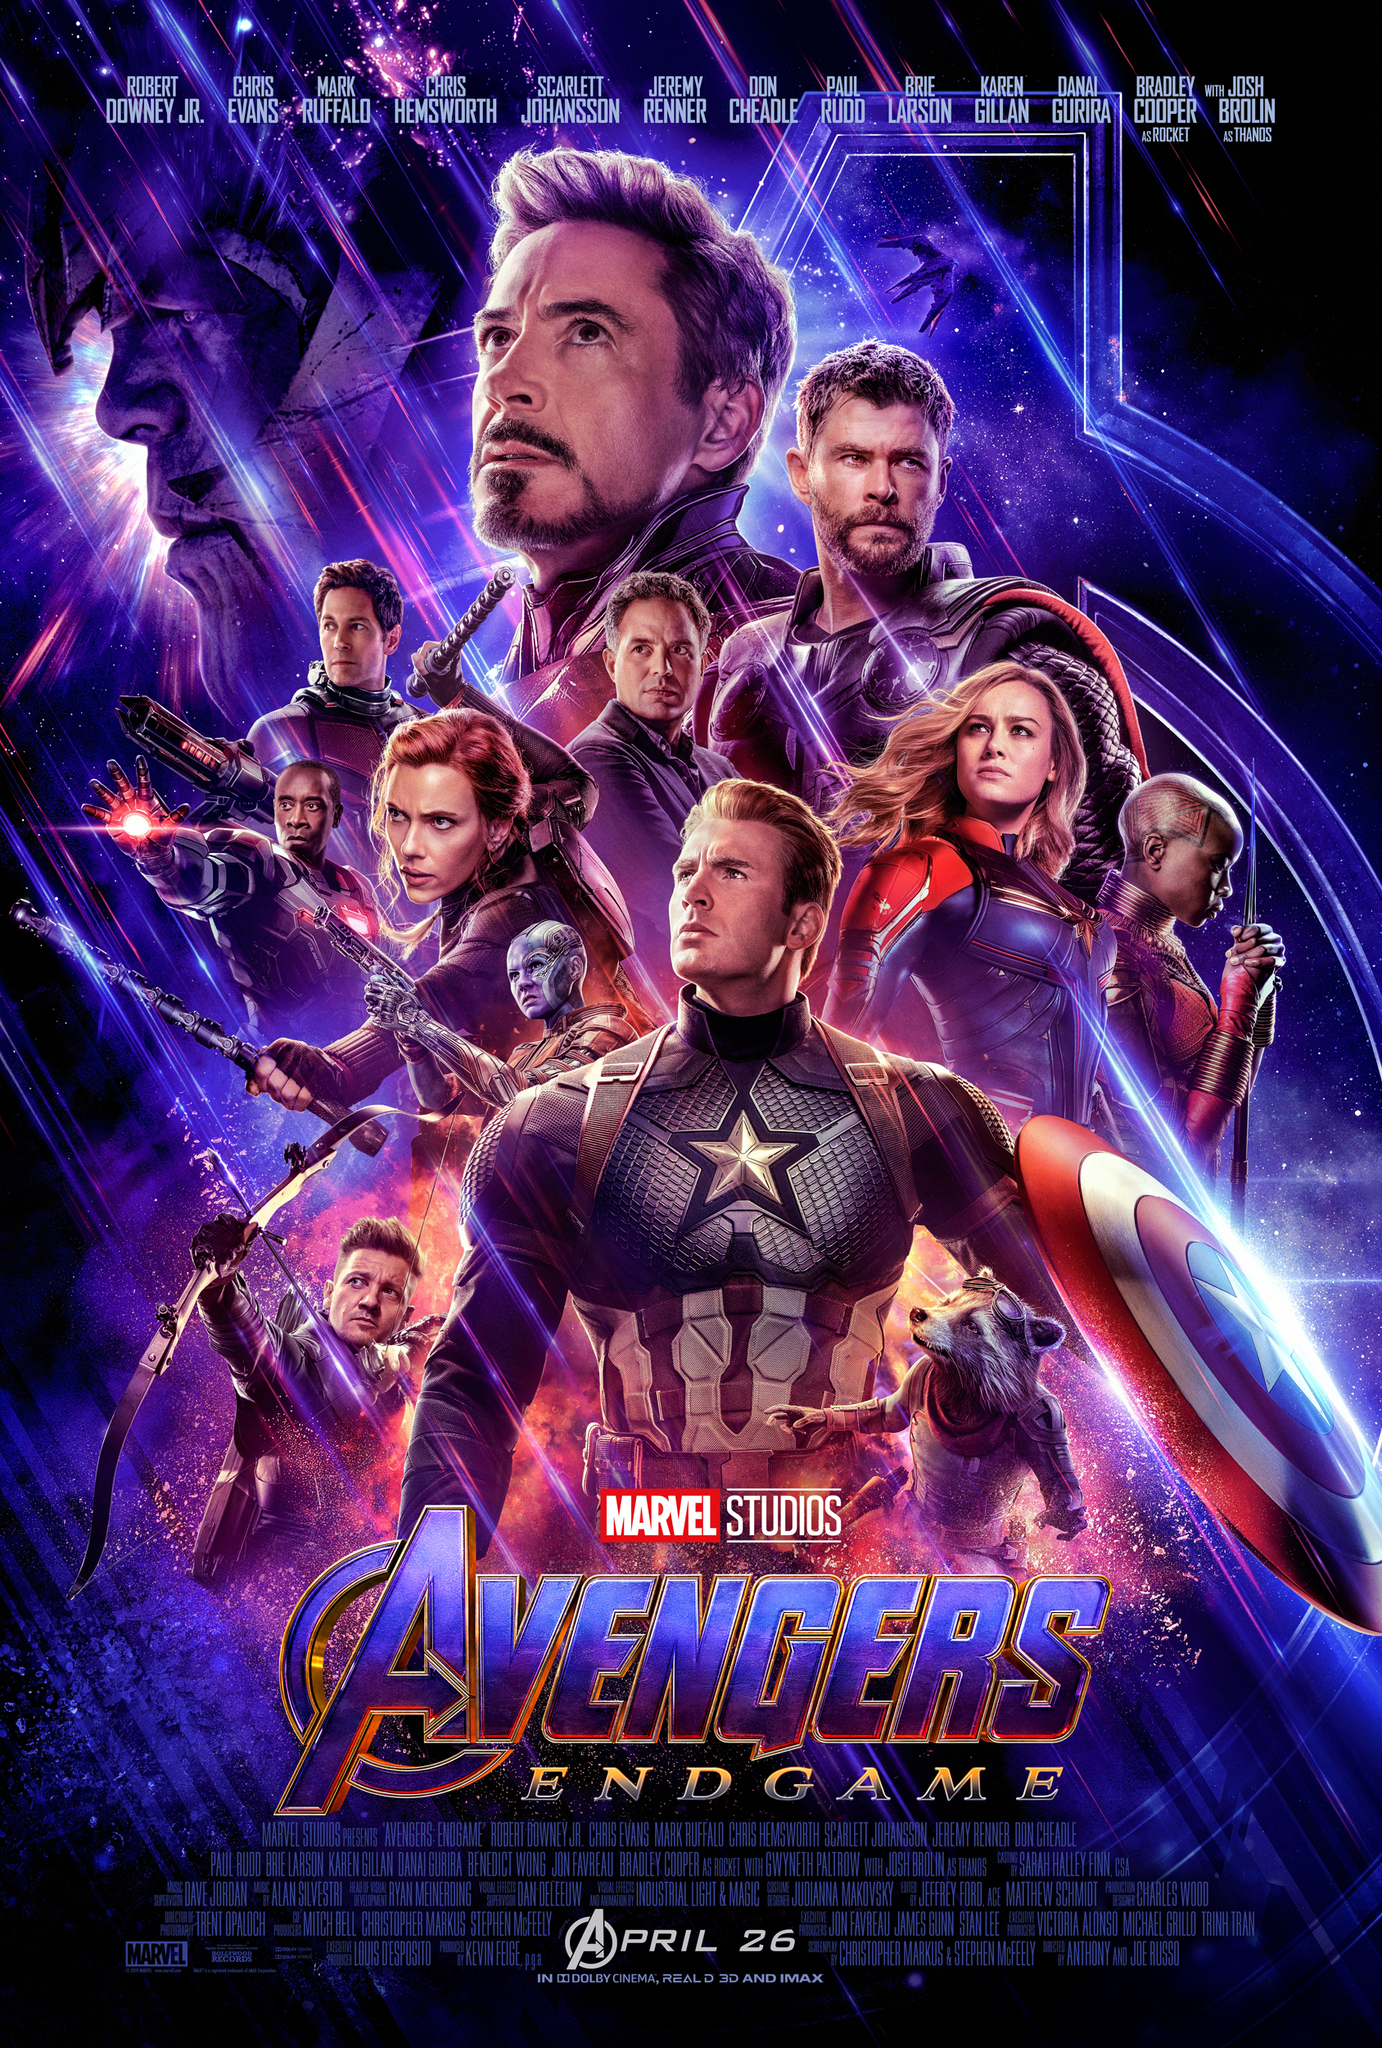 Avengers: Endgame (2019):